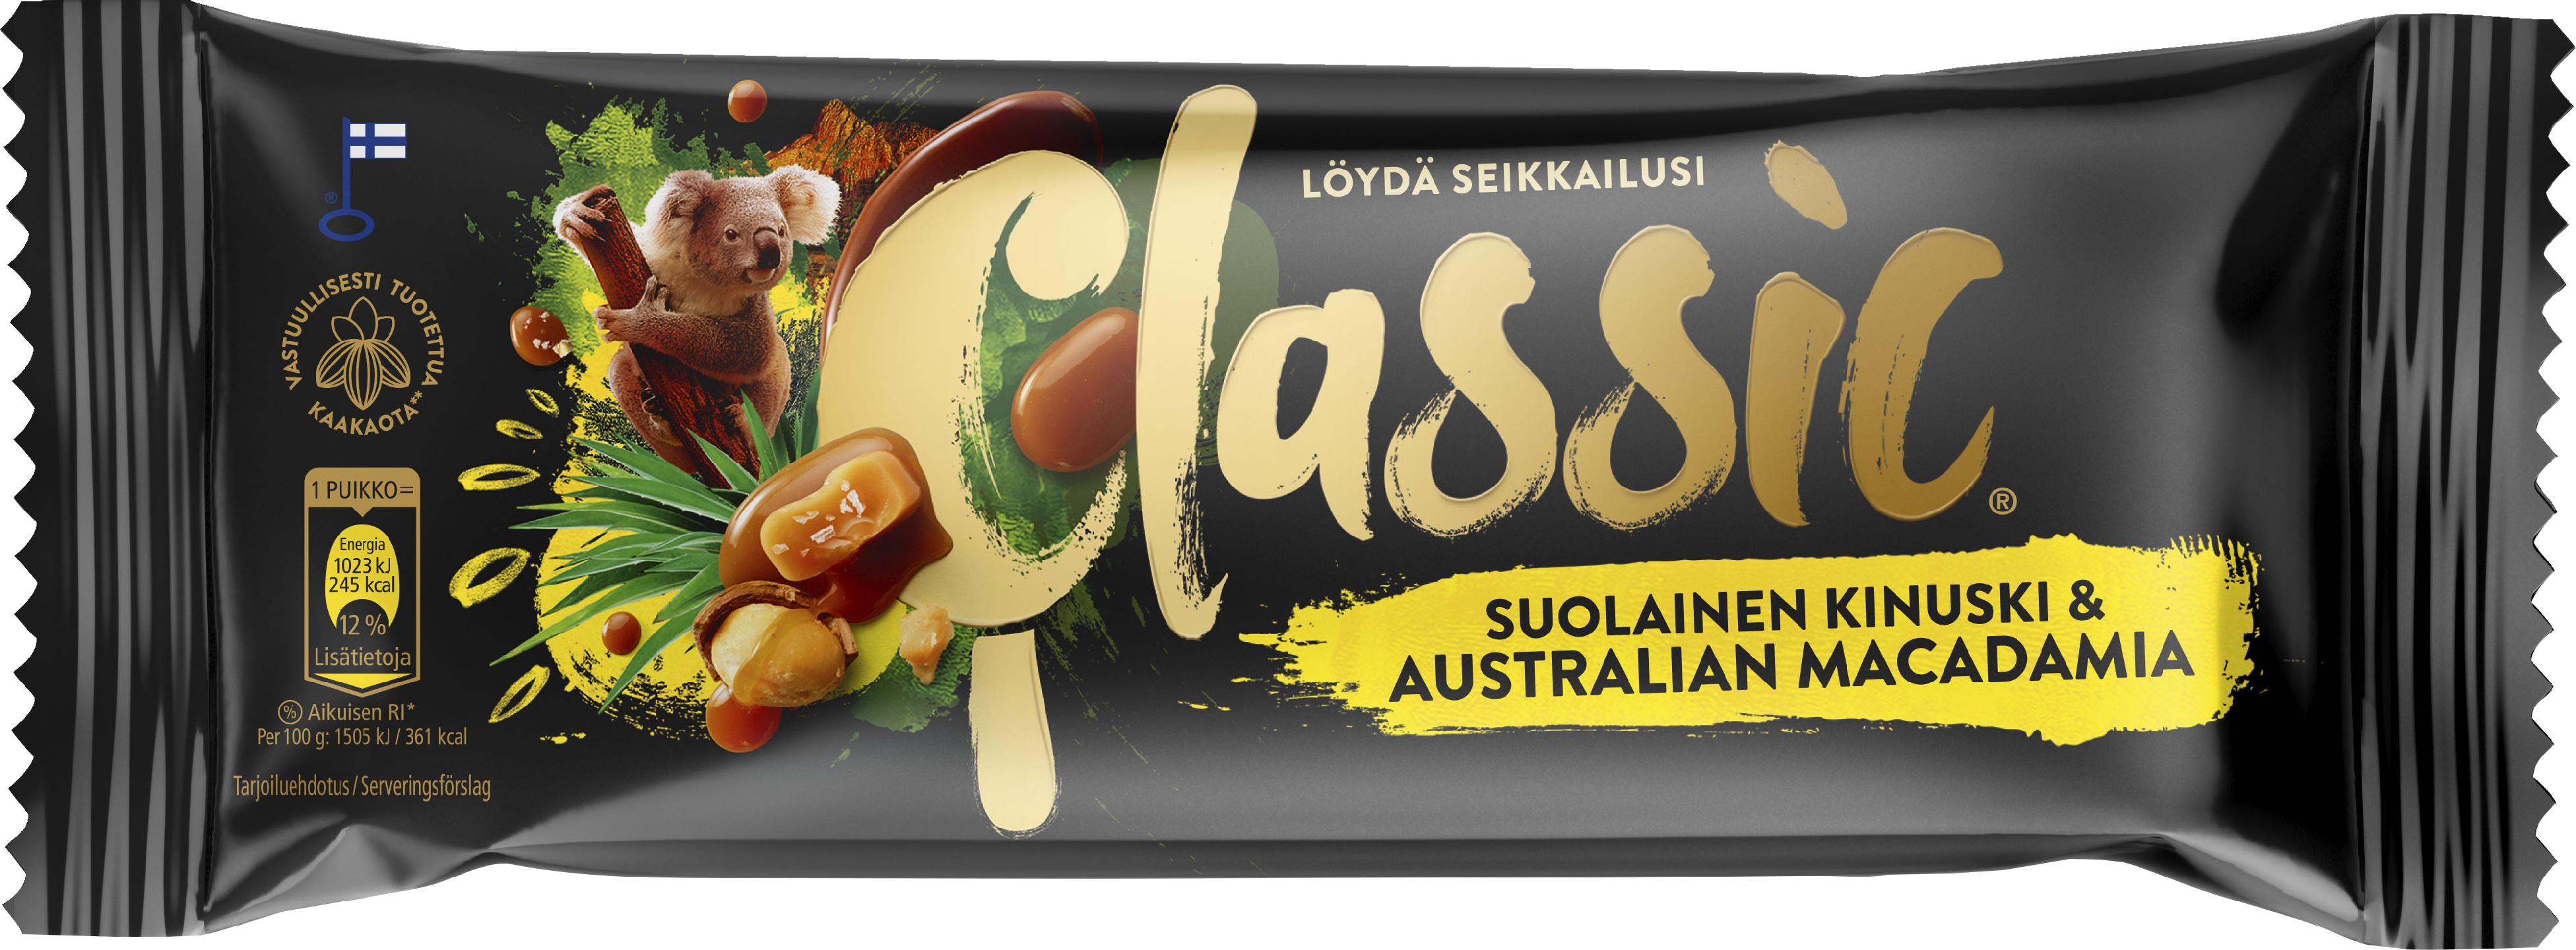 Classic Suolainen Kinuski & Australian Macadamia kermajäätelöpuikko 68g/90ml